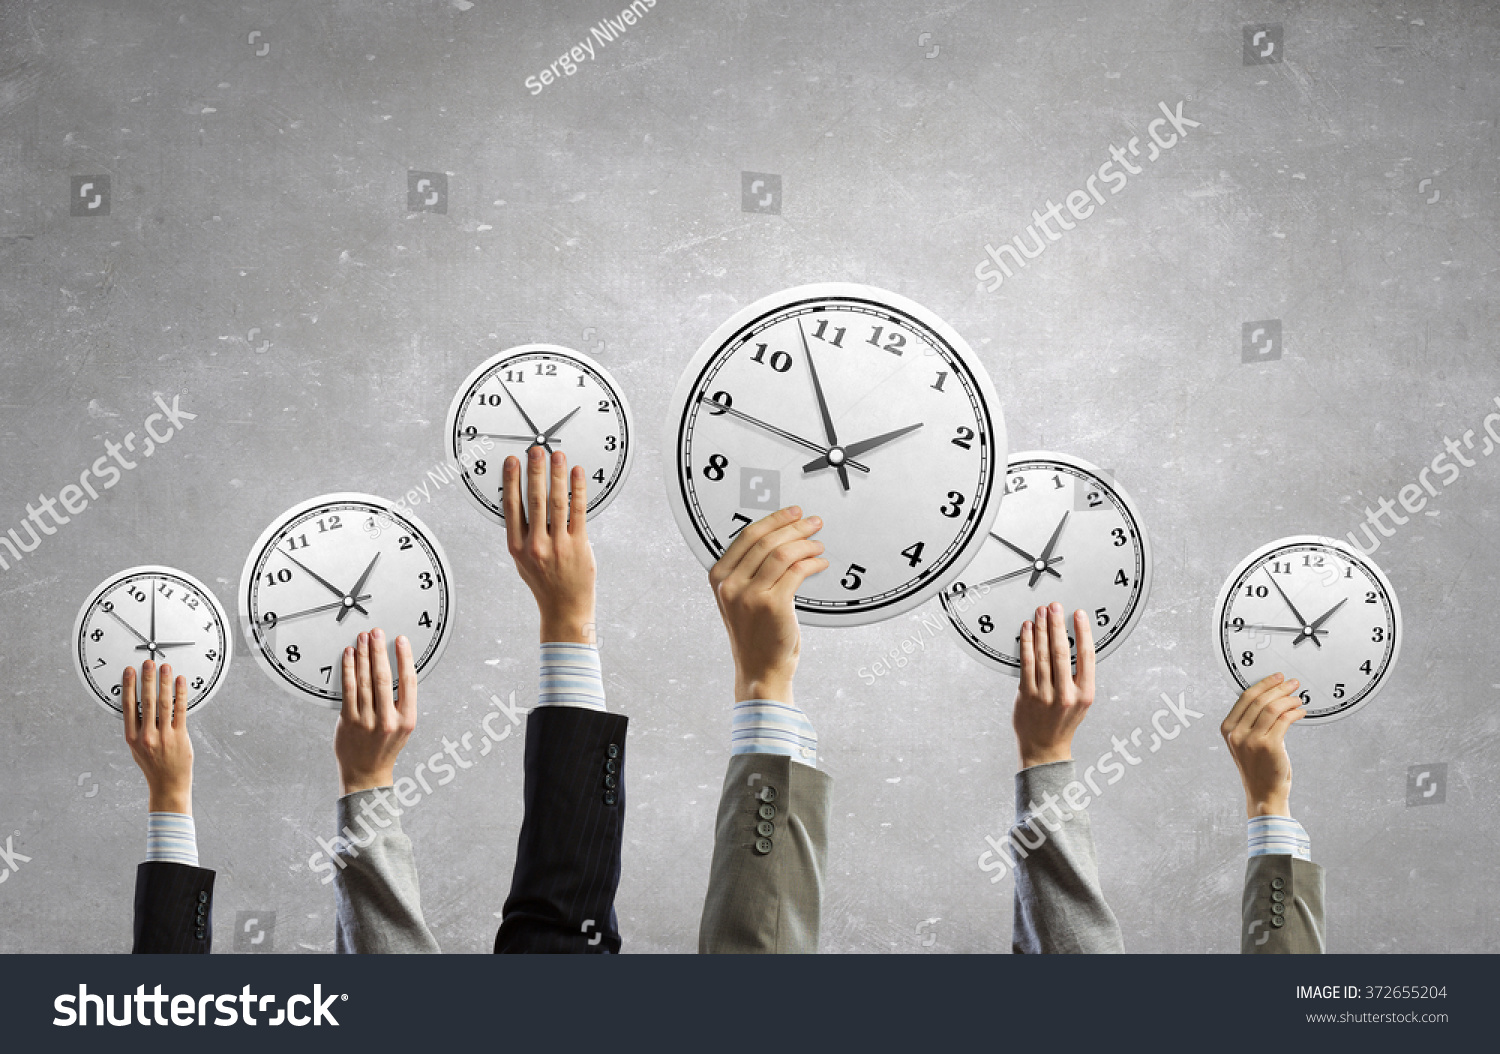 В любое удобное для вас время. Тайм-менеджмент. Умение планировать и управлять временем. Тренинг управление временем. Корпоративный тайм-менеджмент.